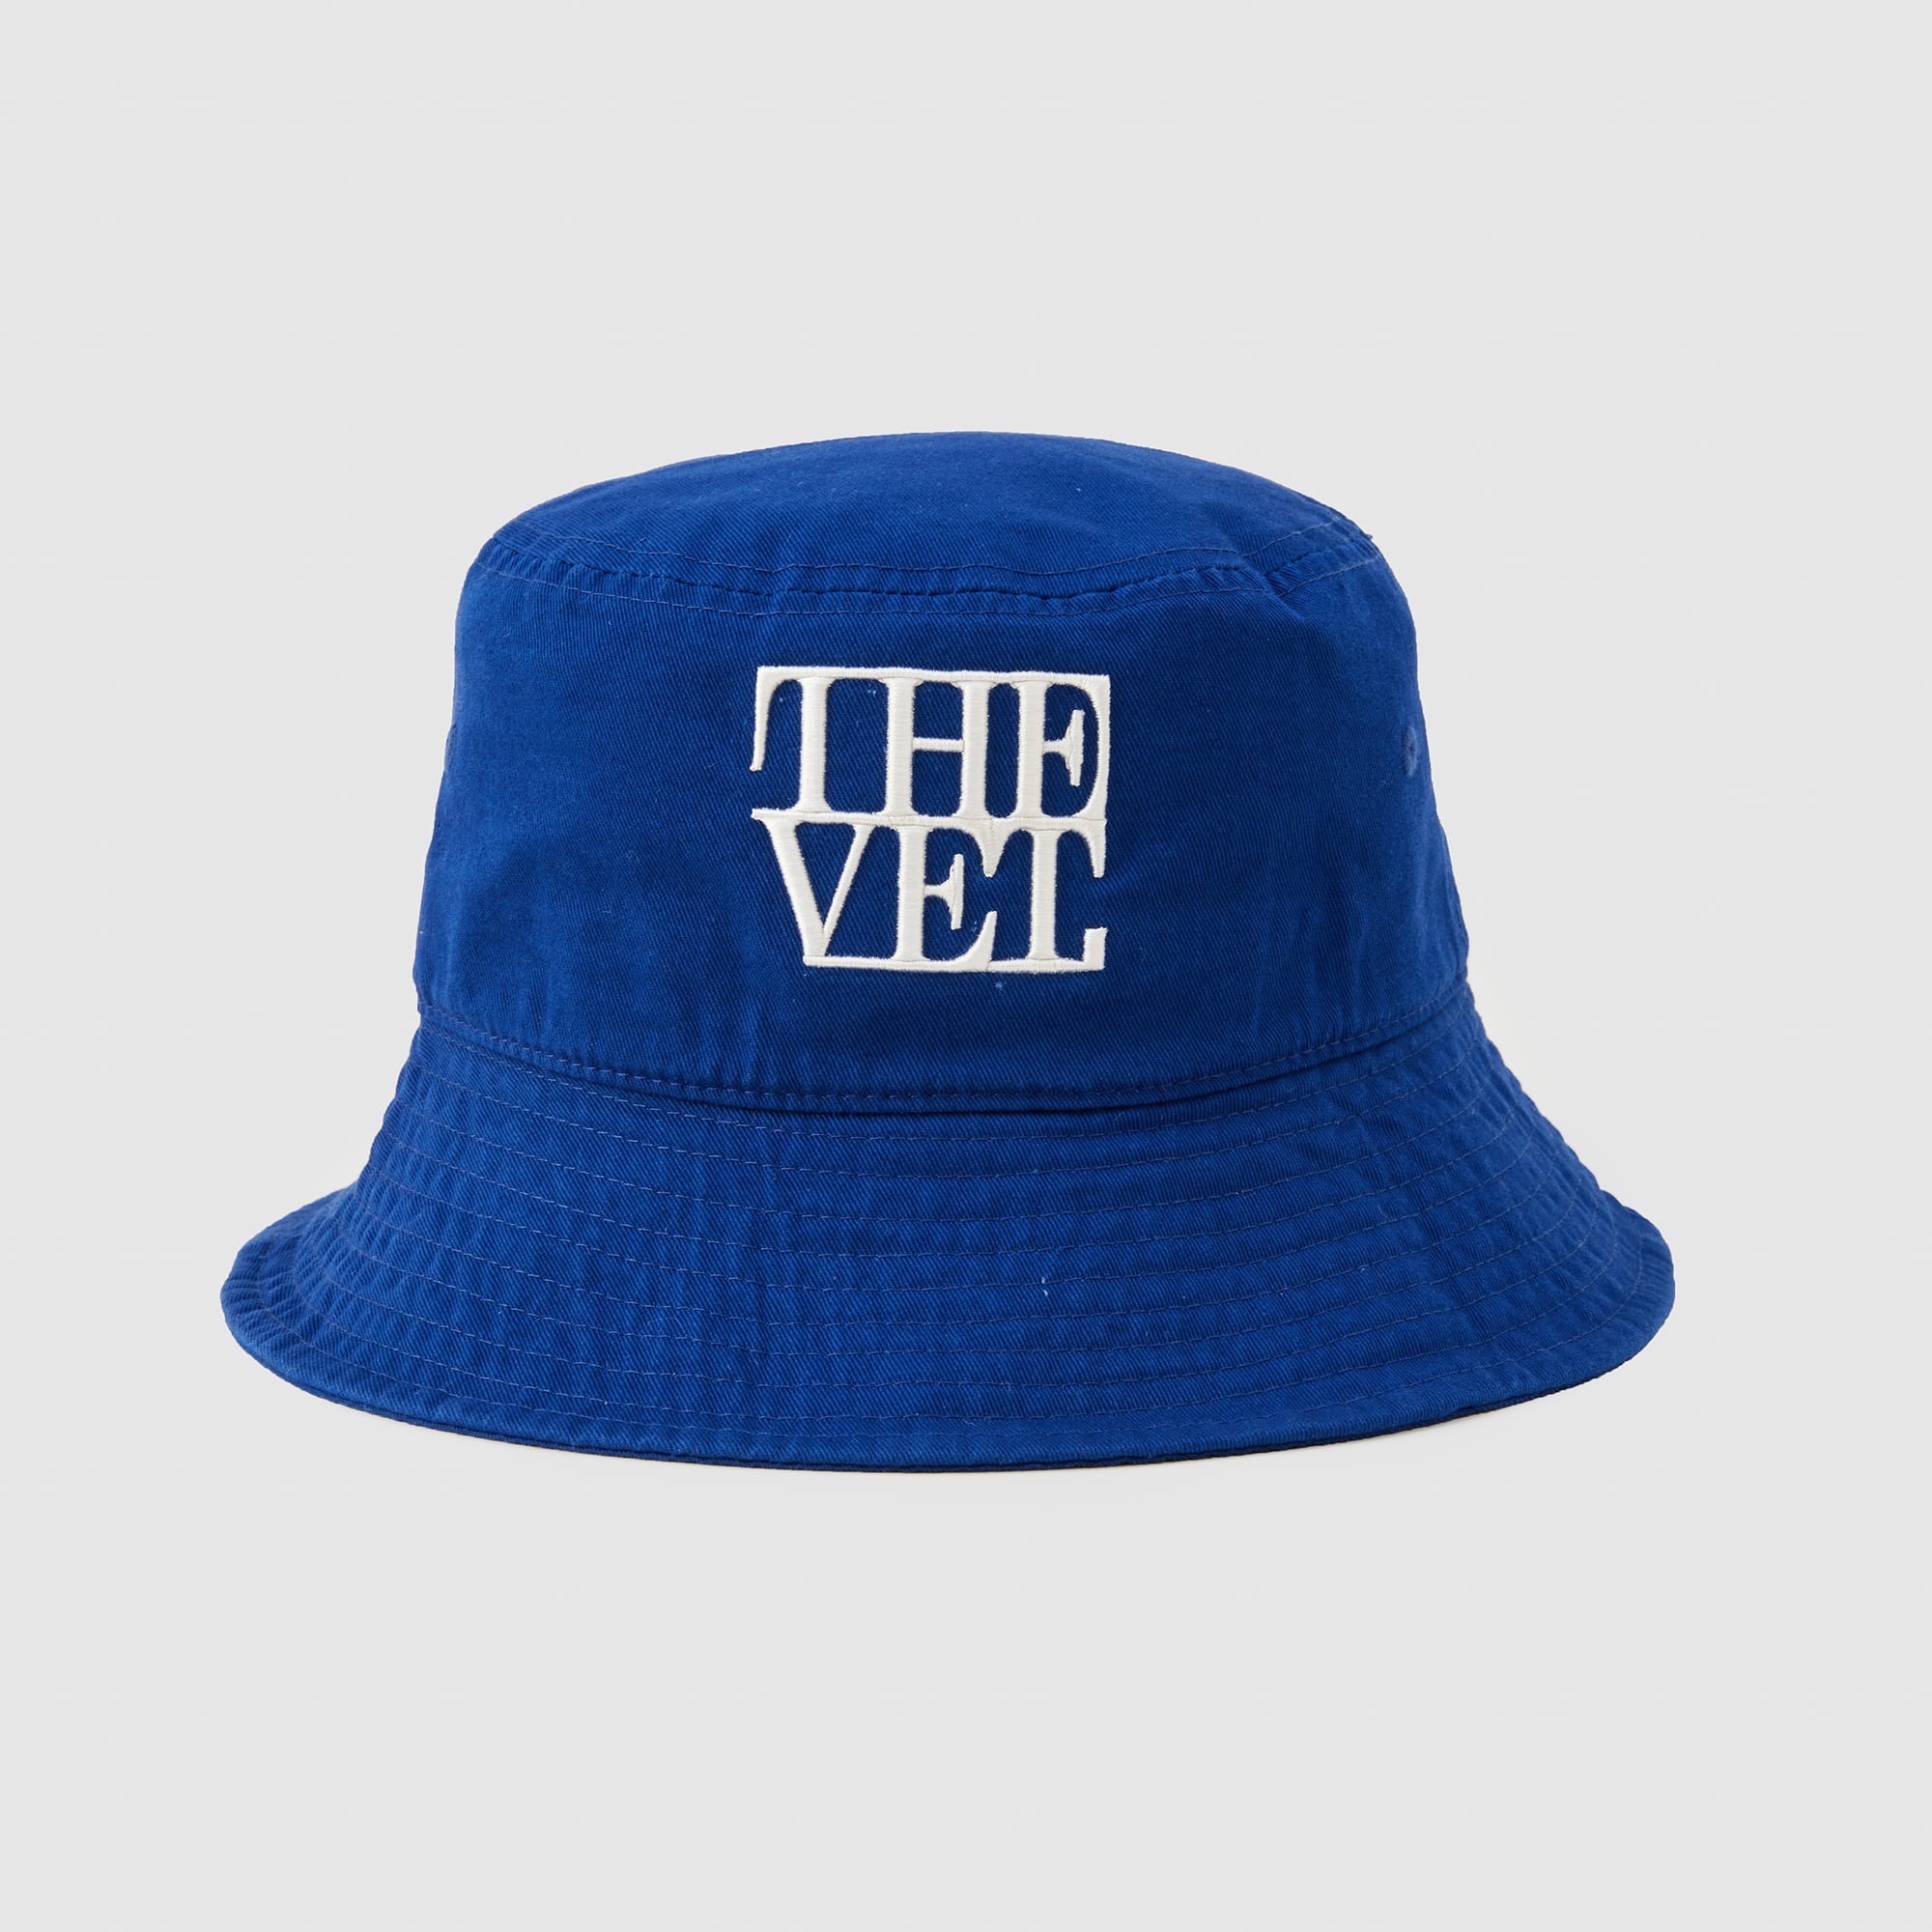 THE VET. BUCKET HAT